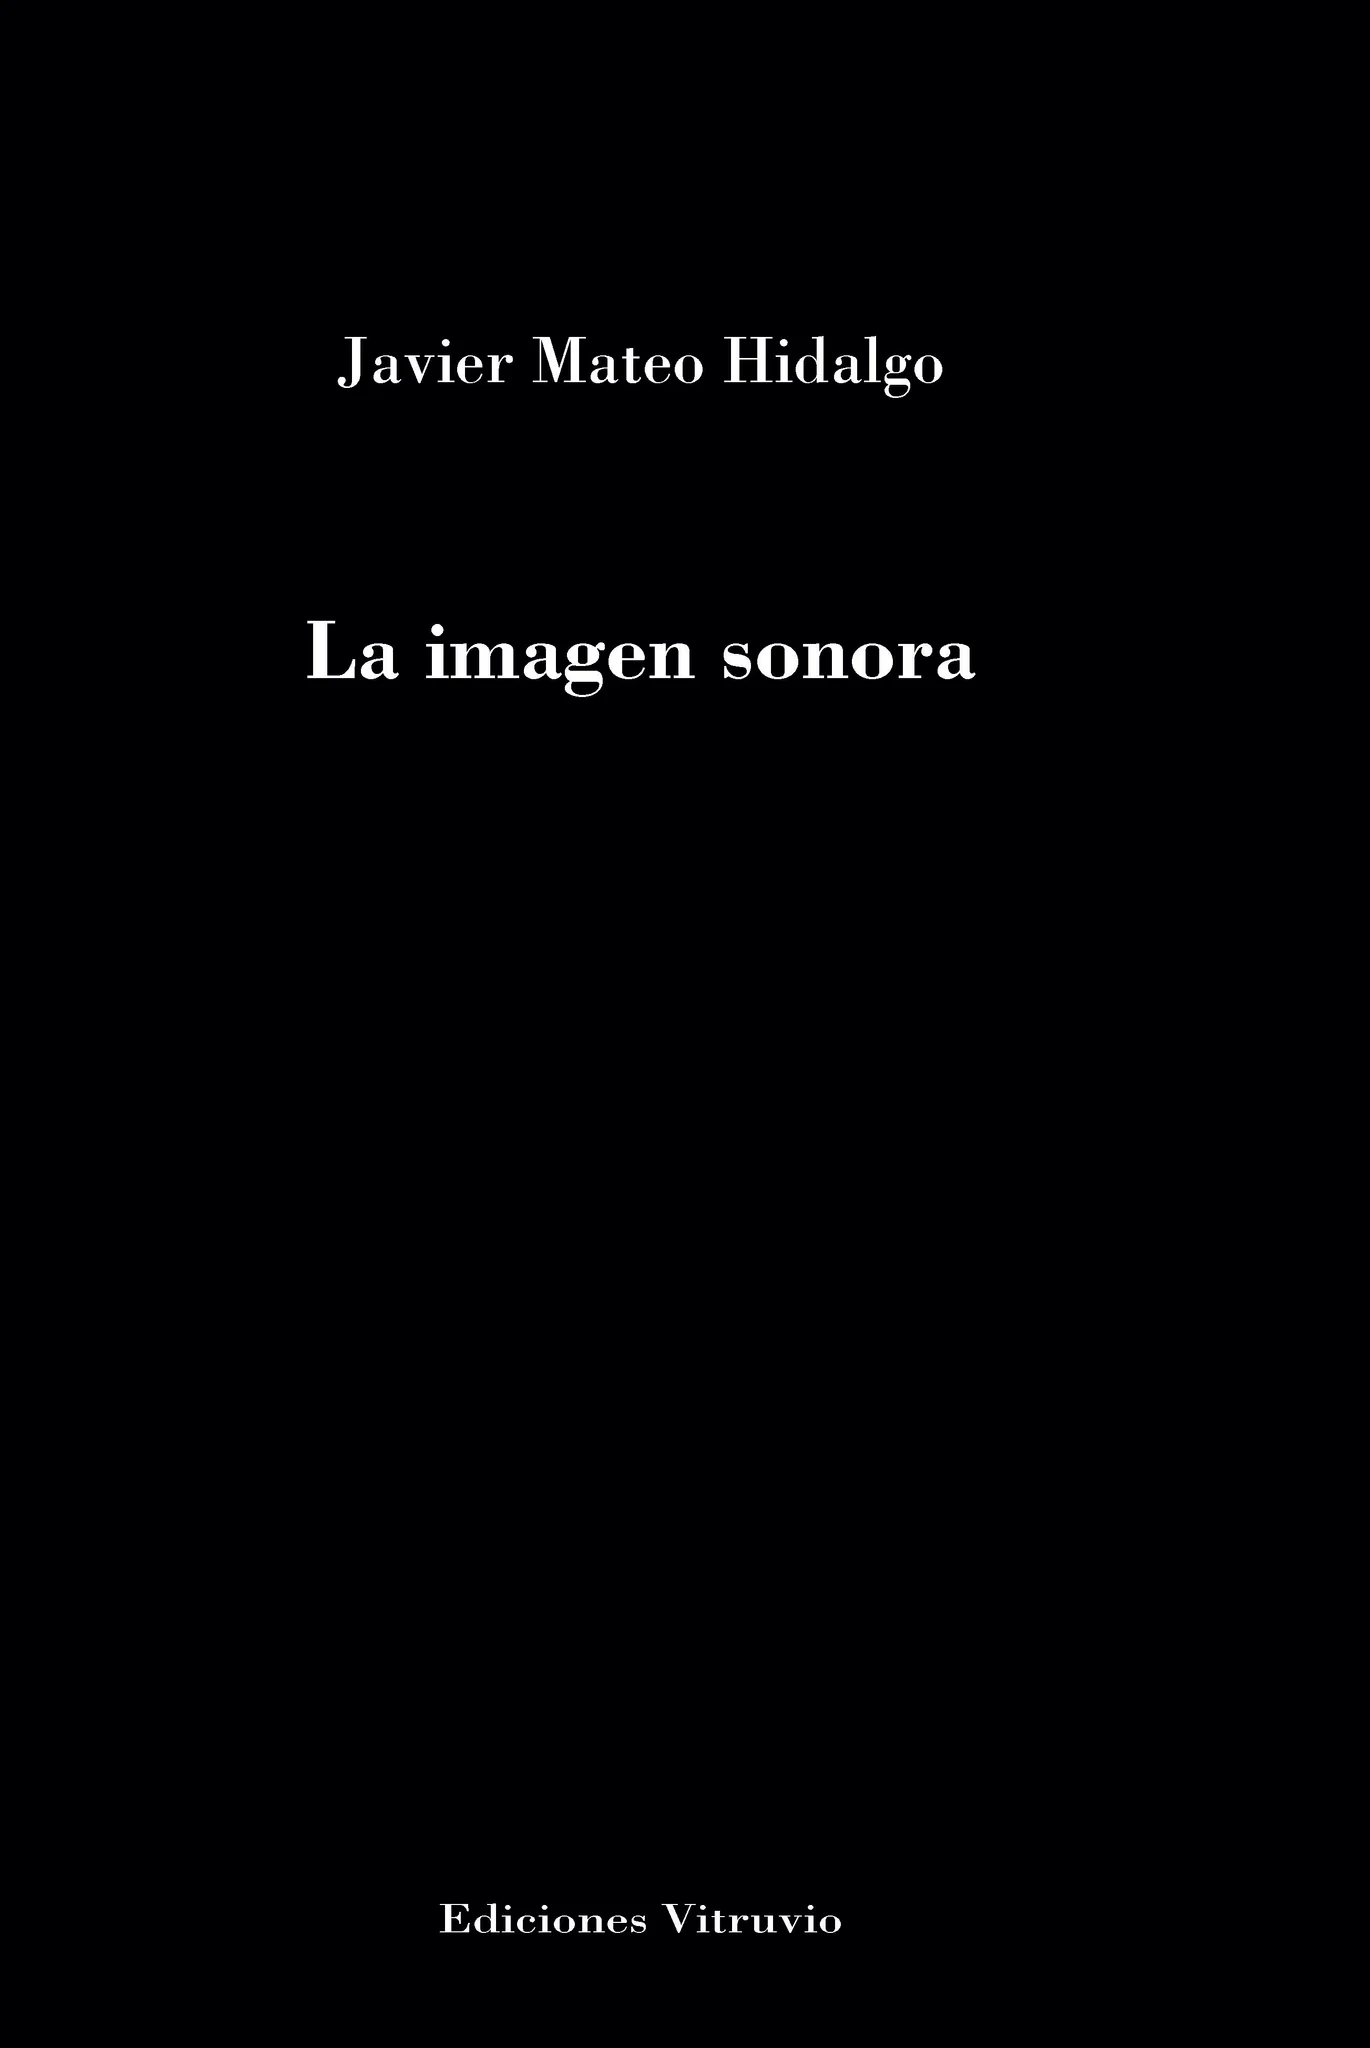 5 poemas de La imagen sonora, de Javier Mateo Hidalgo